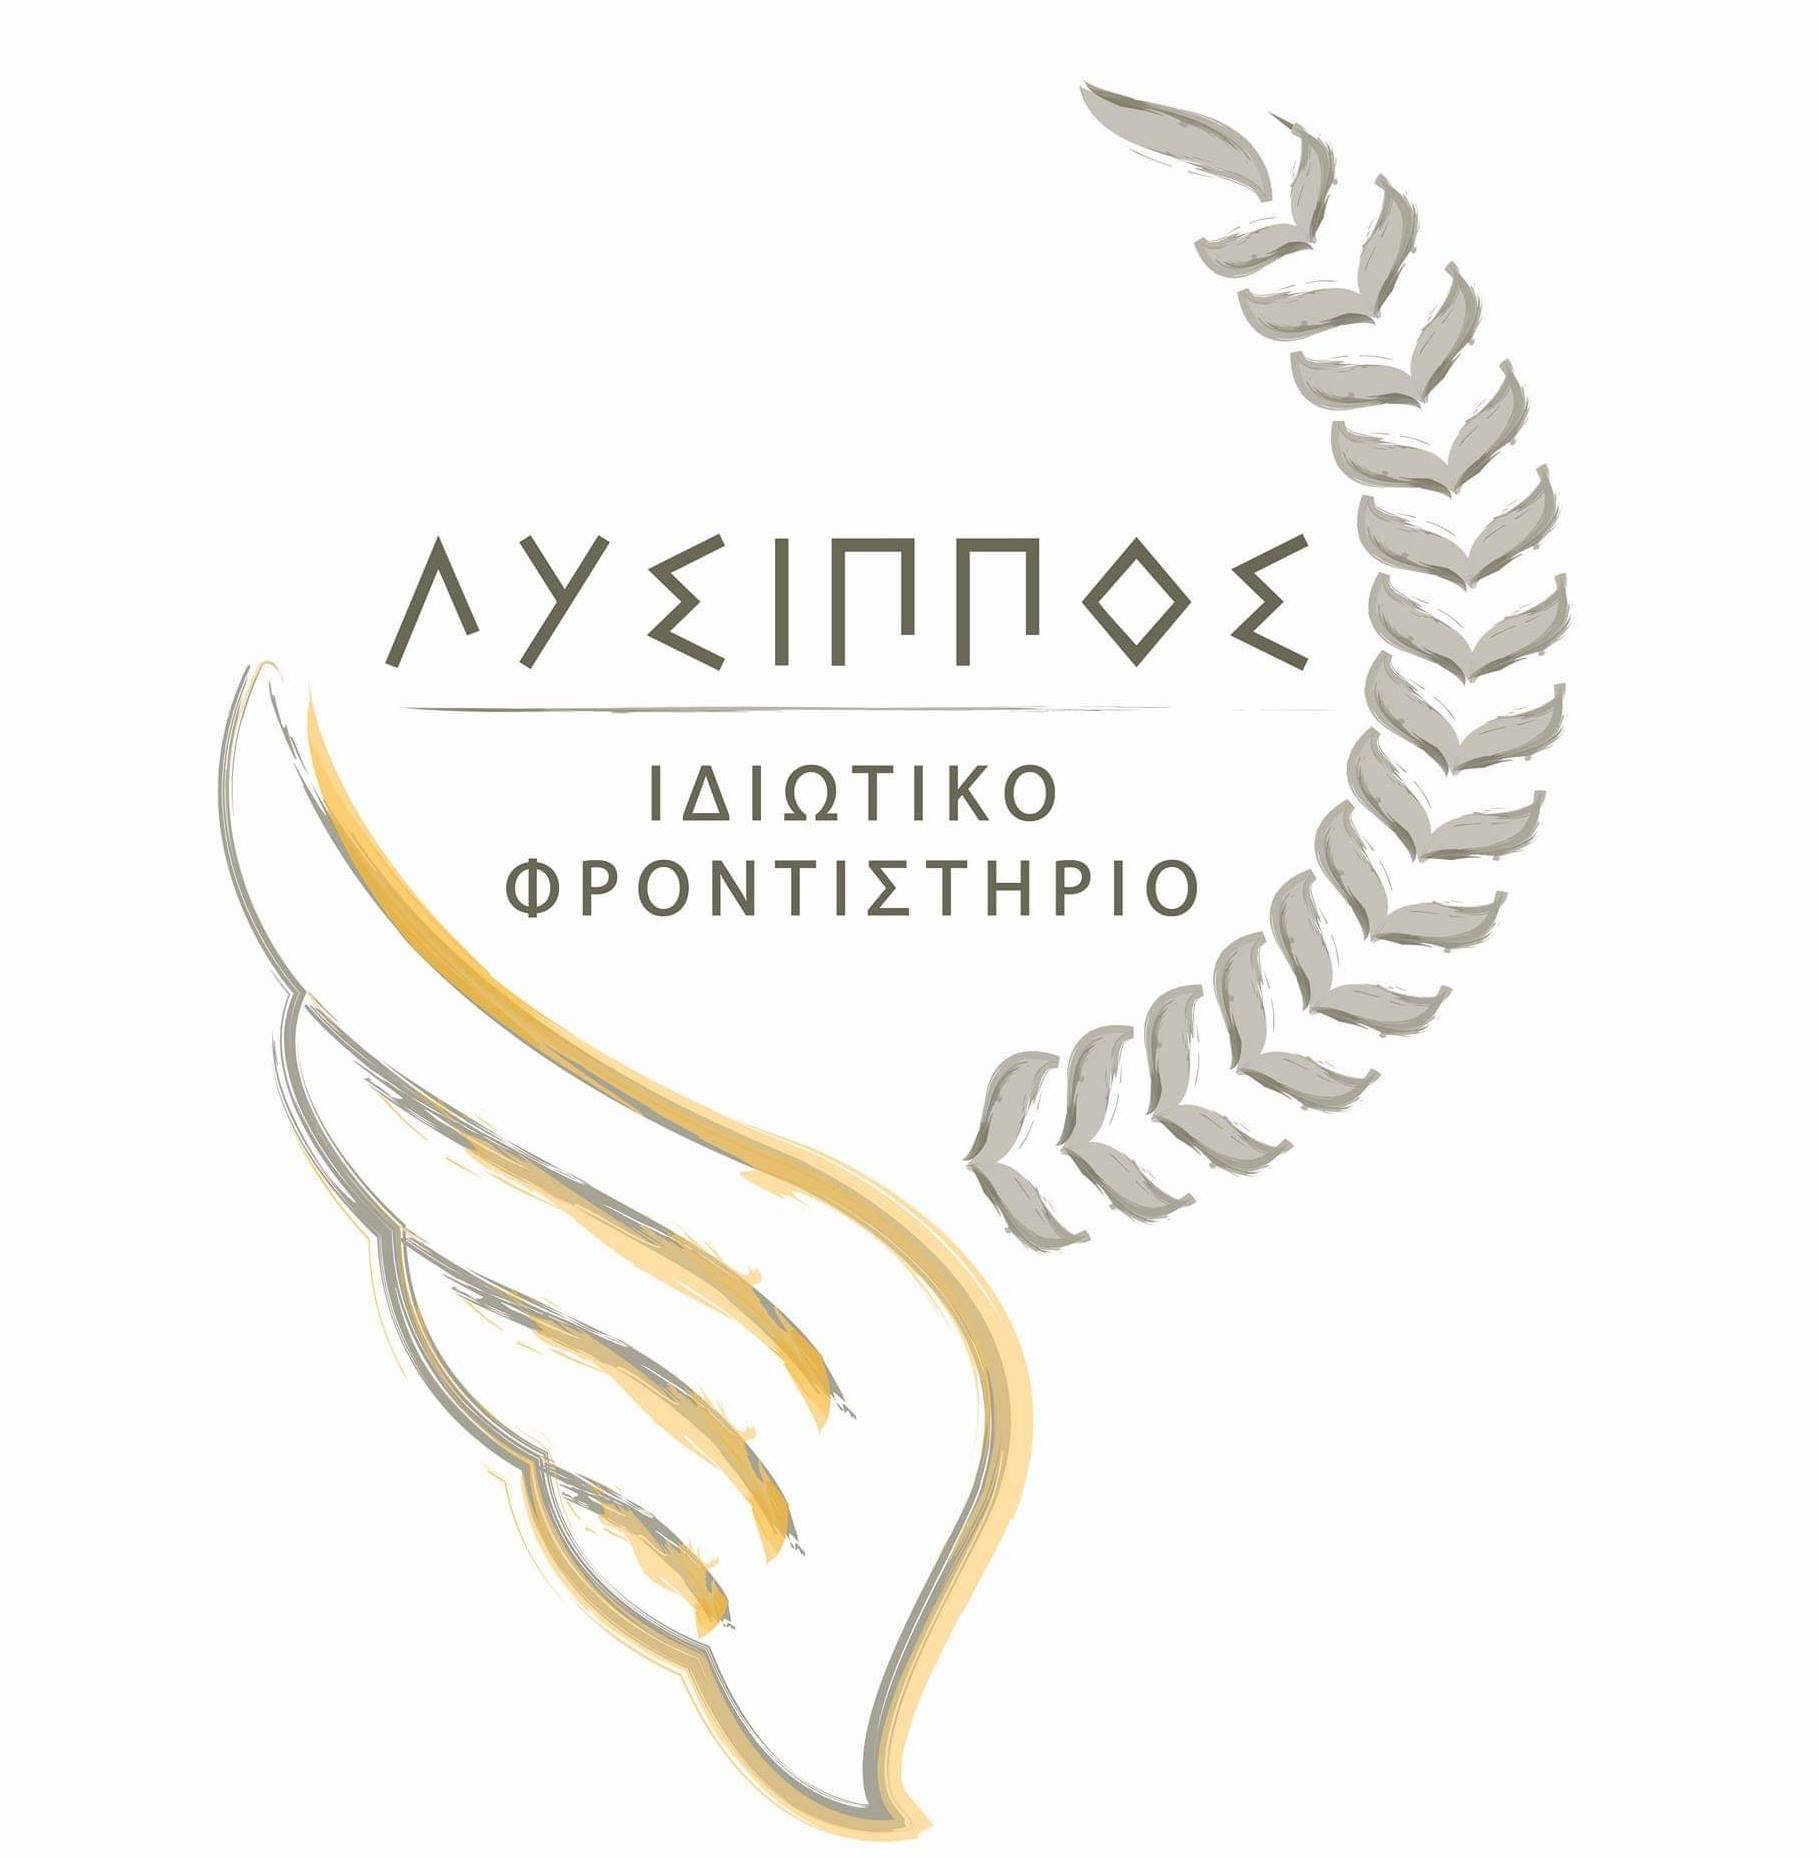 Private Institute "Lysippos"